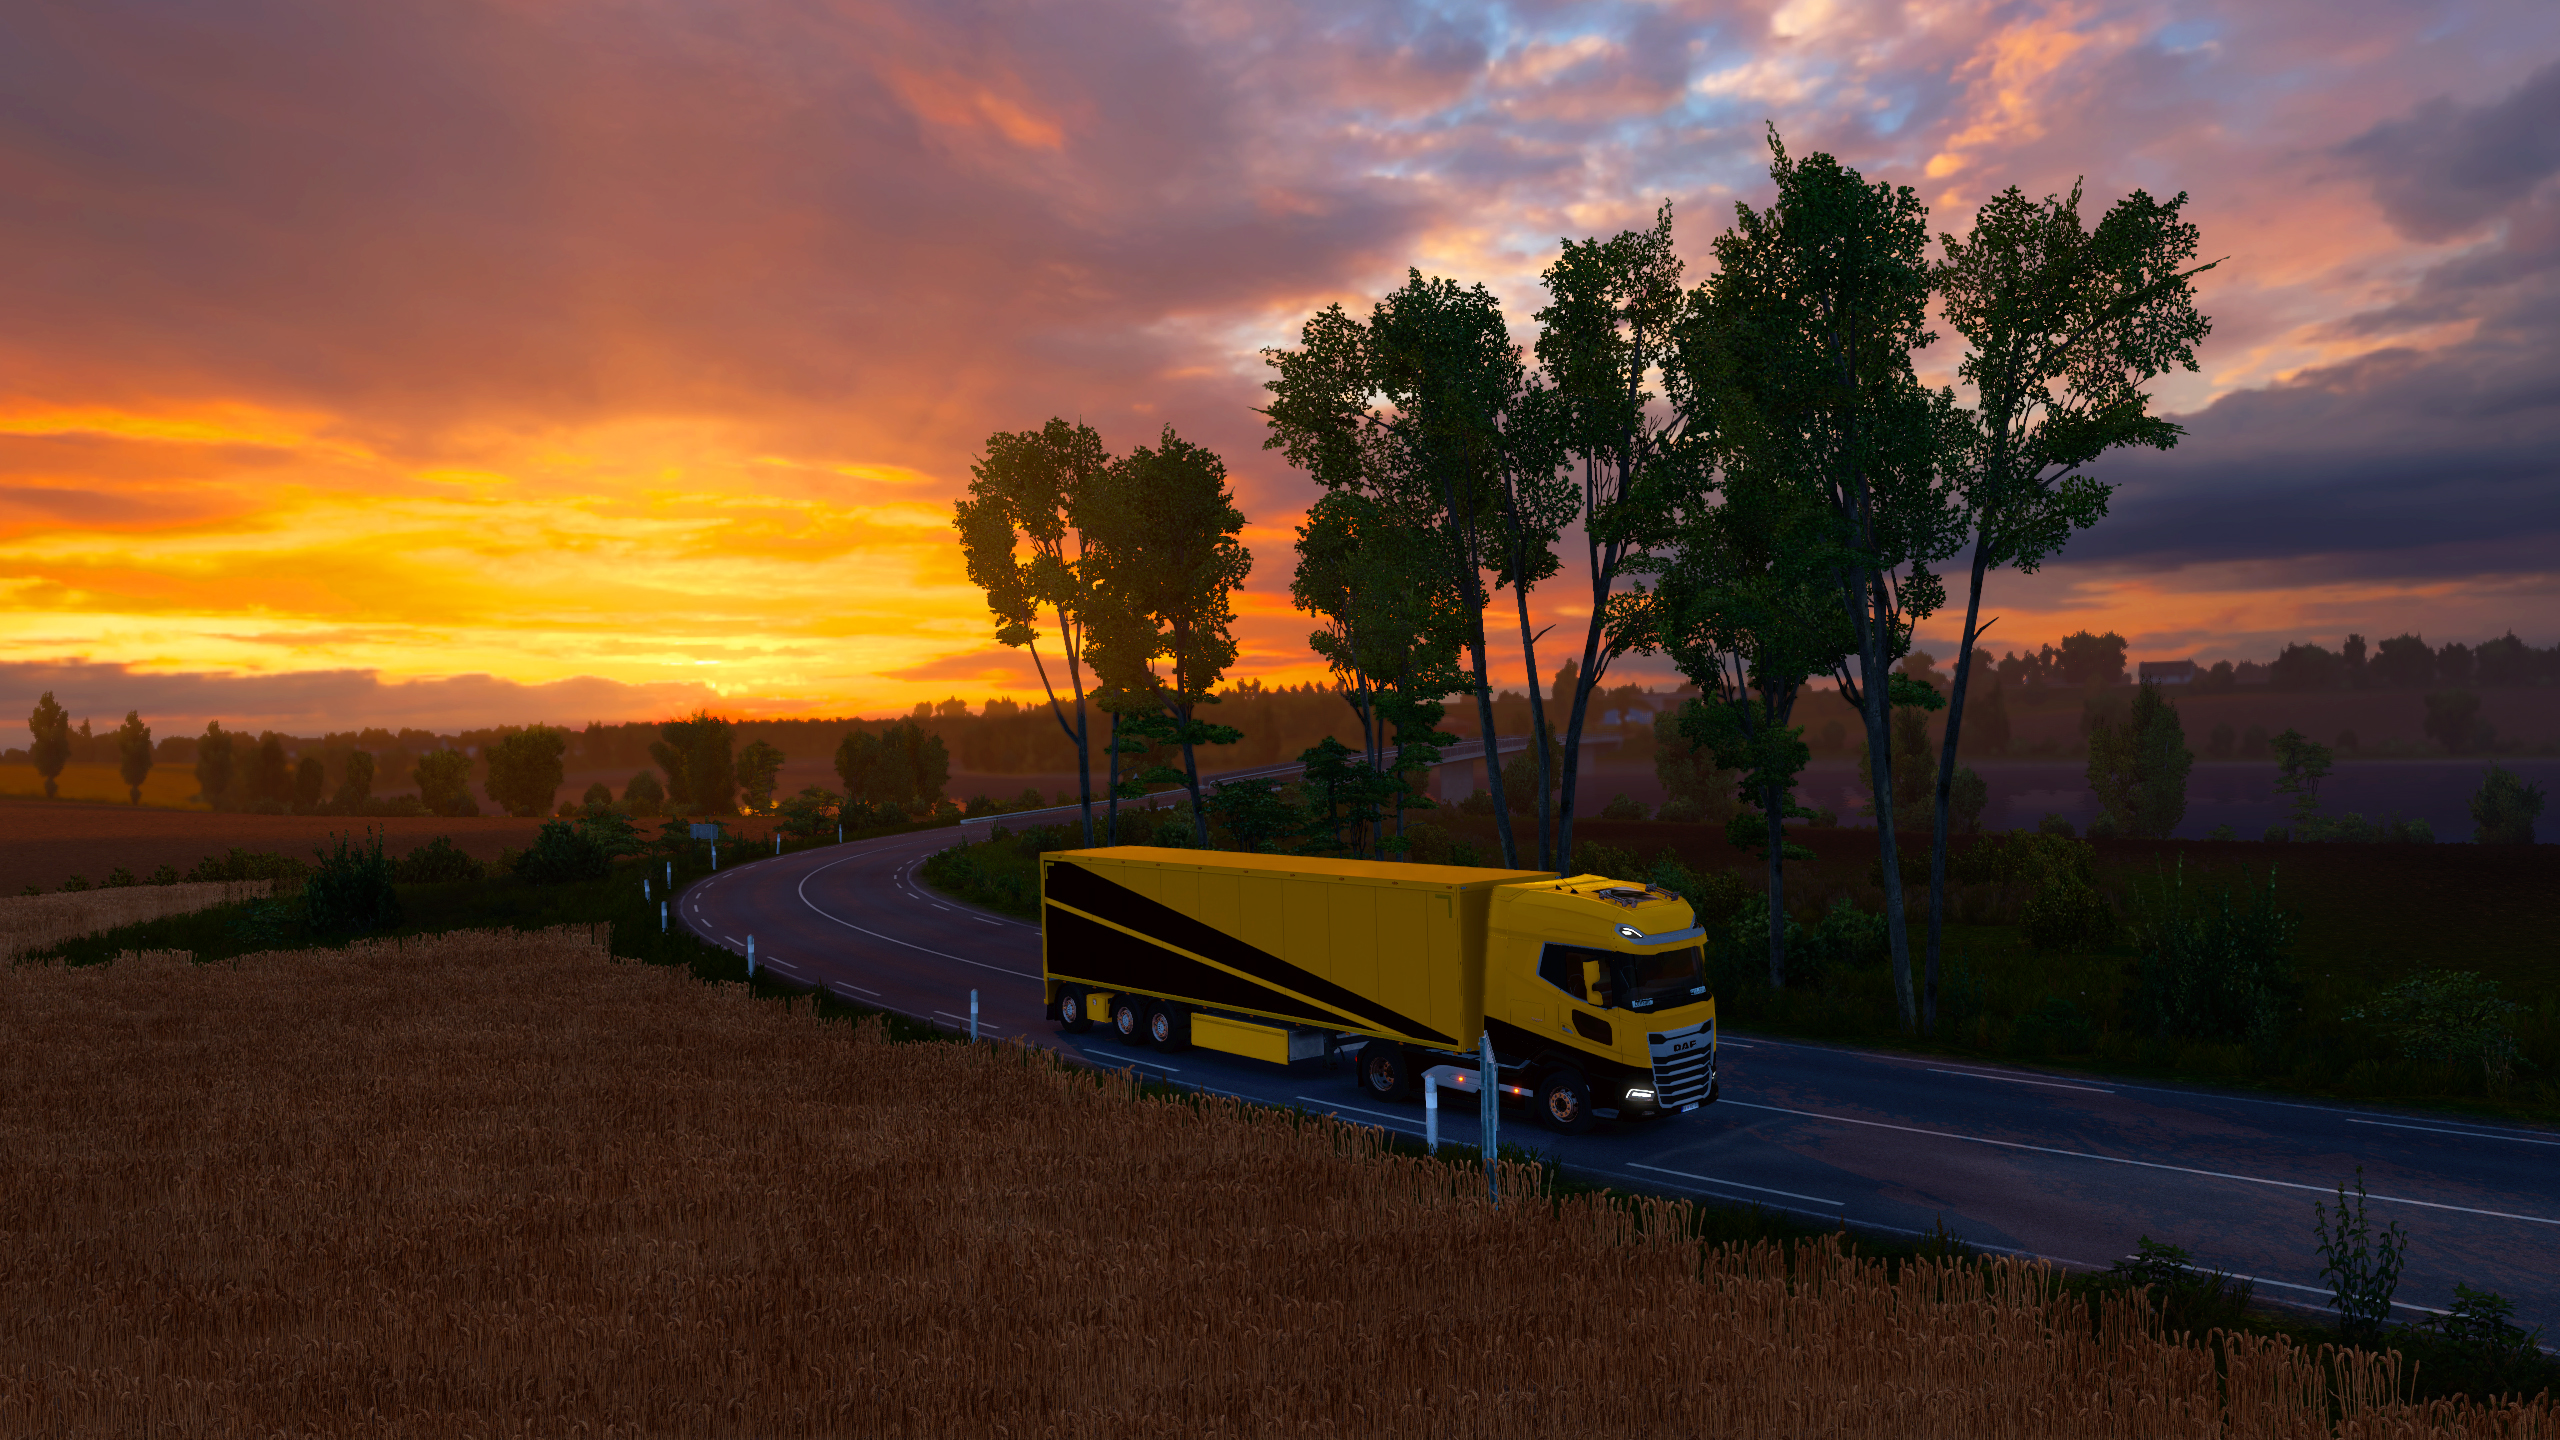 Euro Truck Simulator Sunset Road DAF DAF XG Landscape Highway VTC FBTC Skin FBTC Digital Art Video G 2560x1440